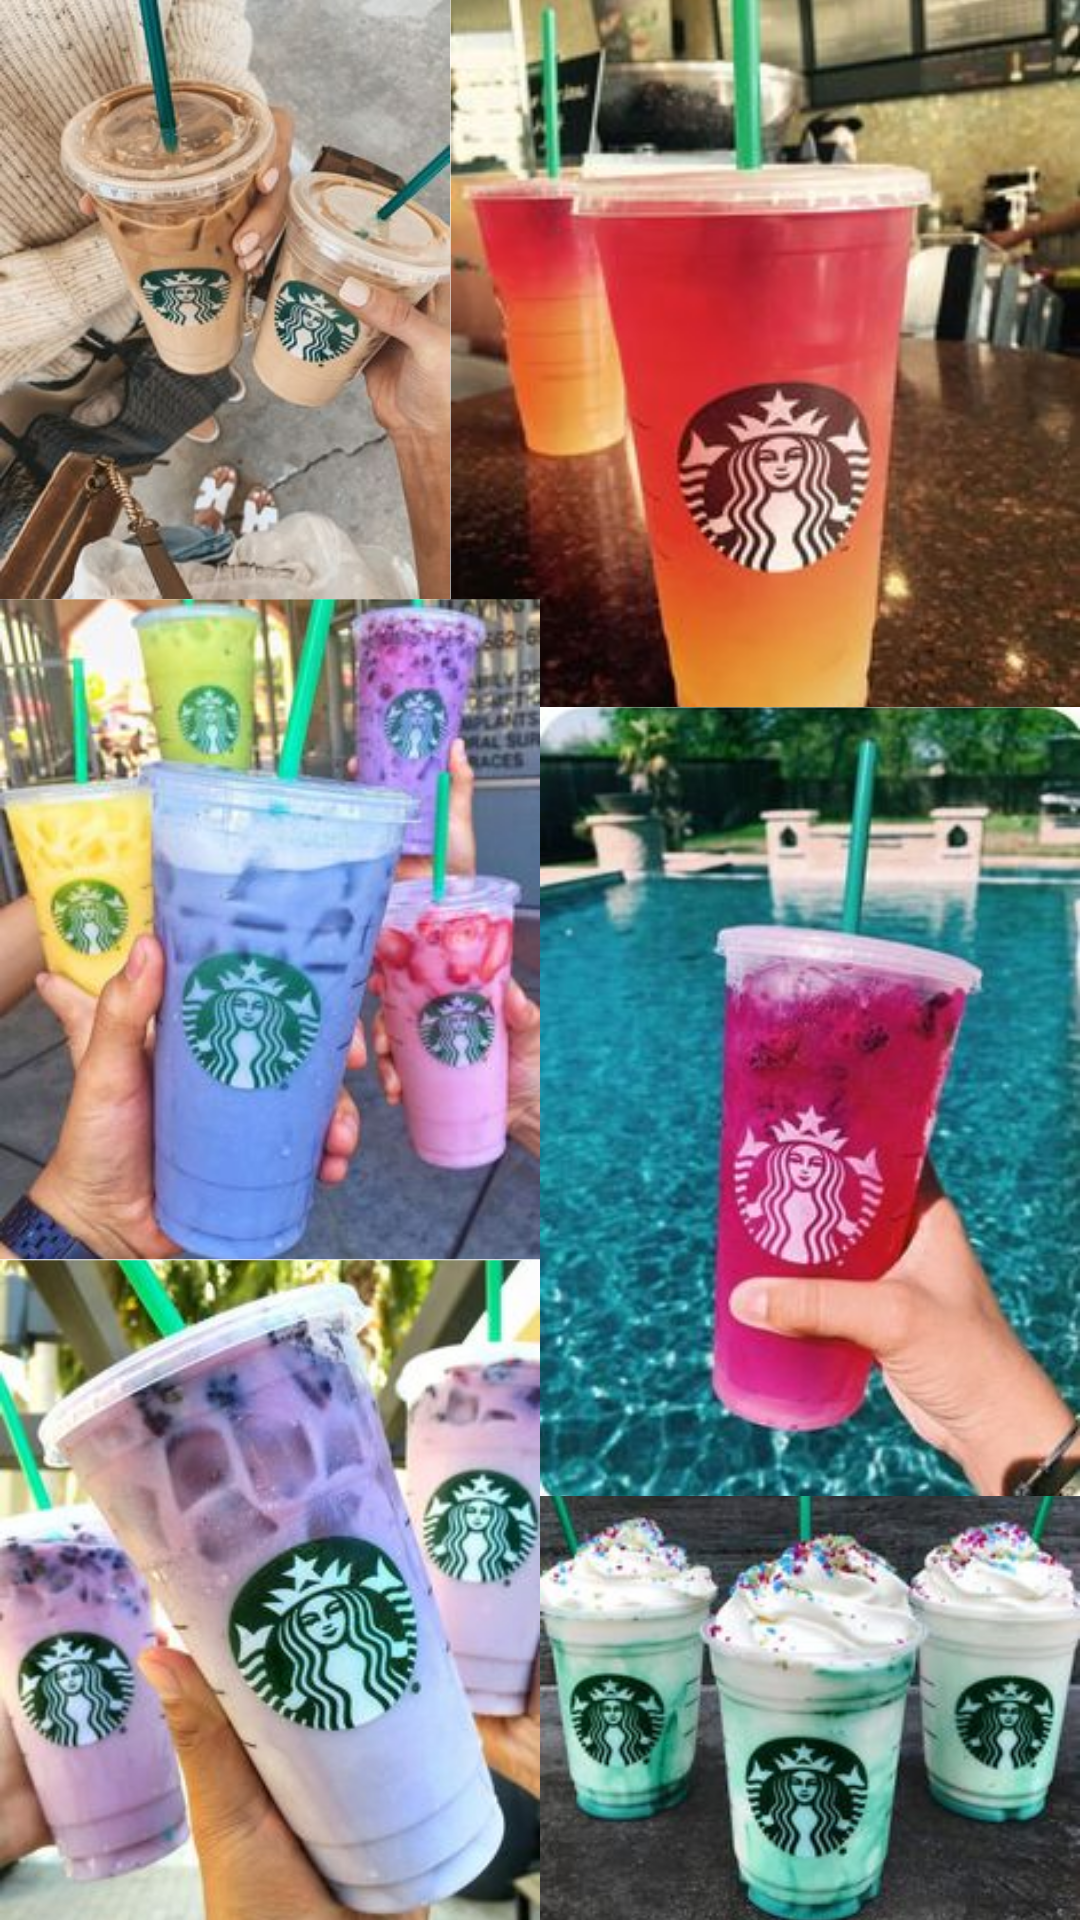 Starbucks aesthetic phone wallpaper. Starbucks wallpaper, Starbucks secret menu, Starbucks snapchat